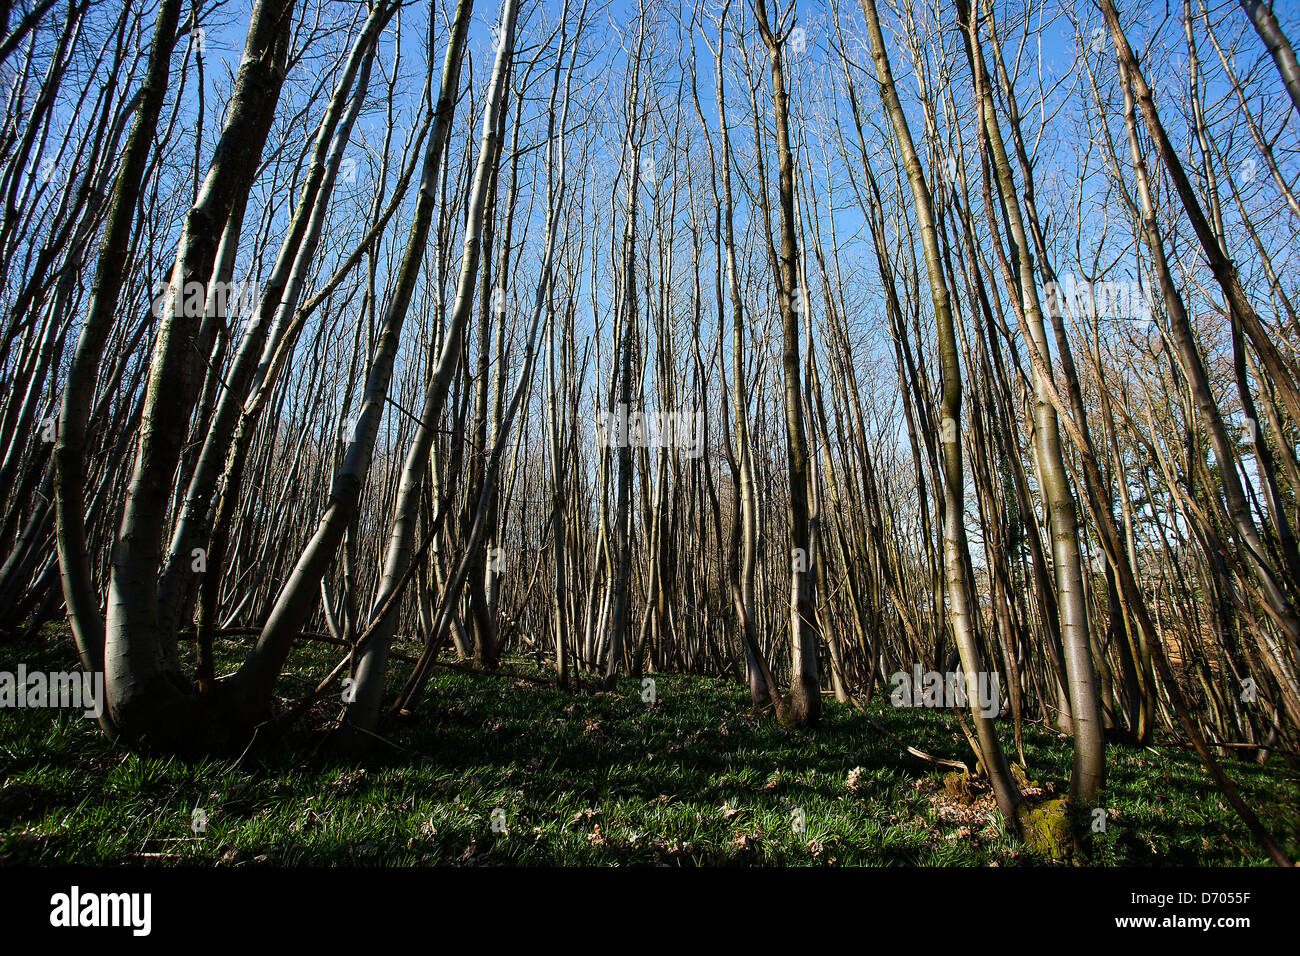 Tall thin dense trees in woodland Stock Photo